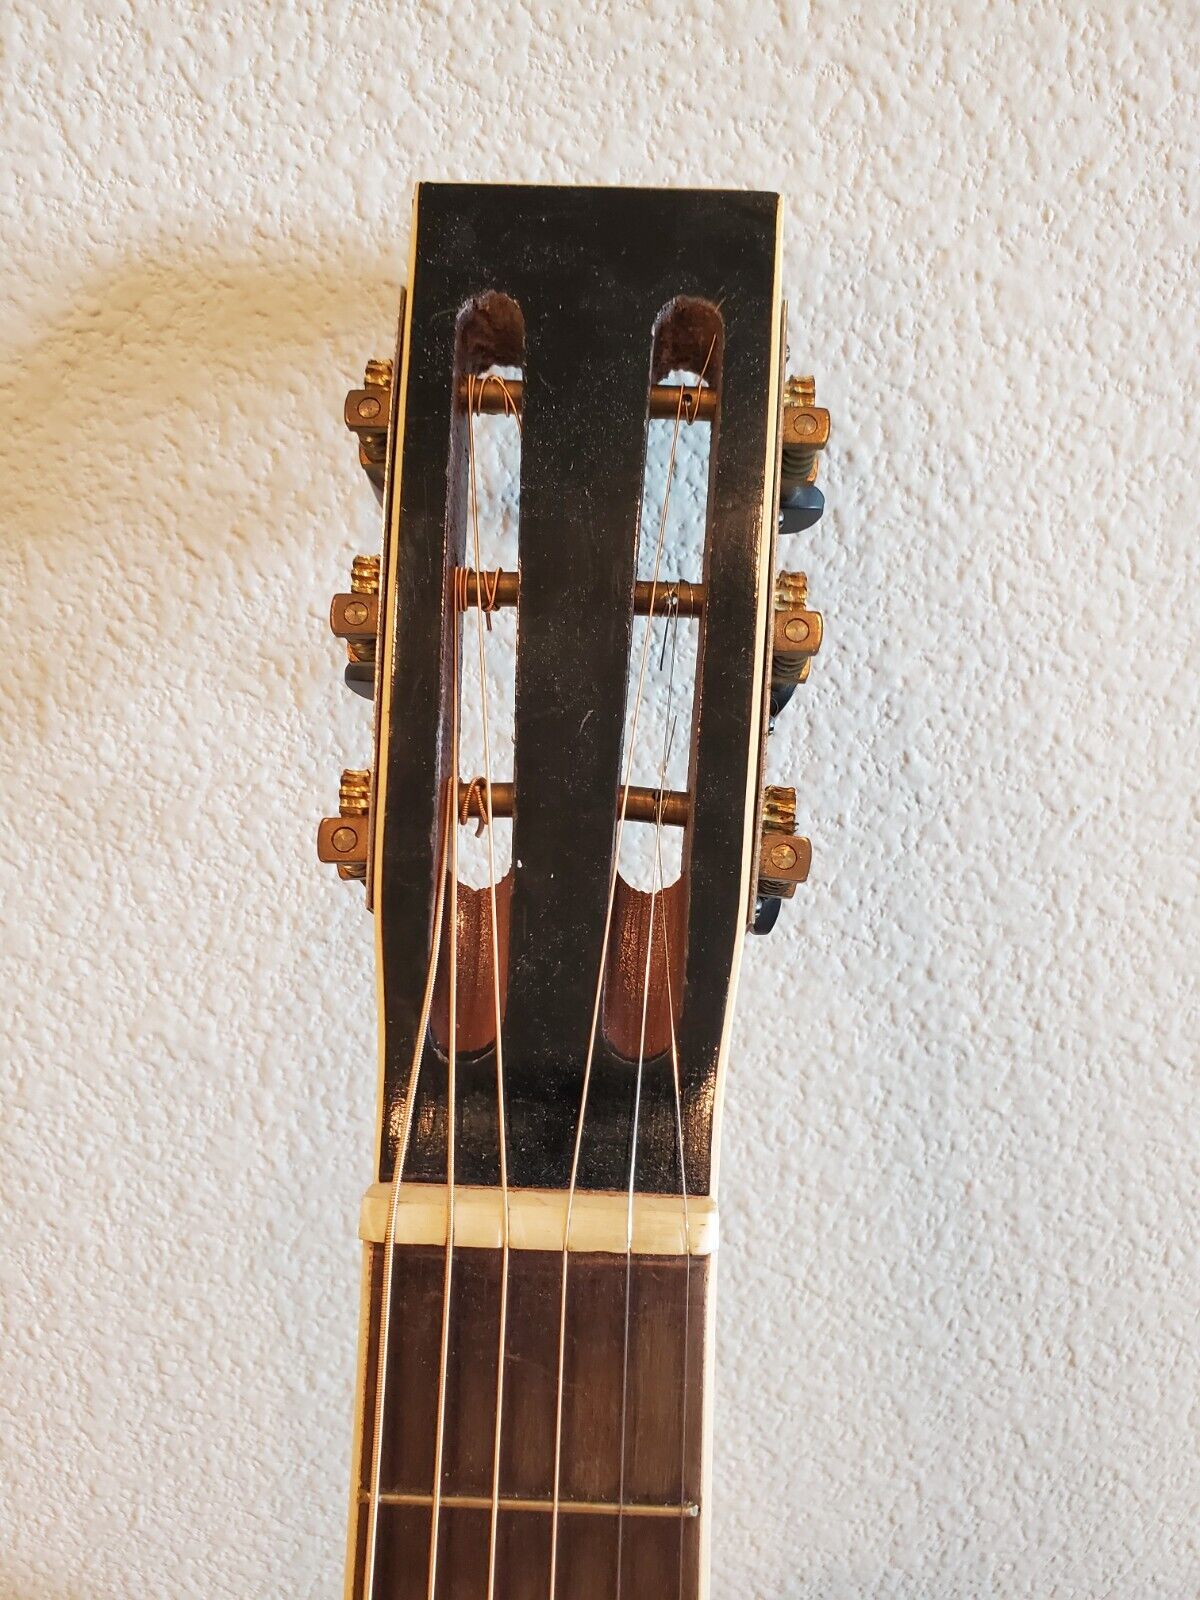 Vintage 1930s Regal Parlor Guitar – Lyon & Healy Quality Built 5